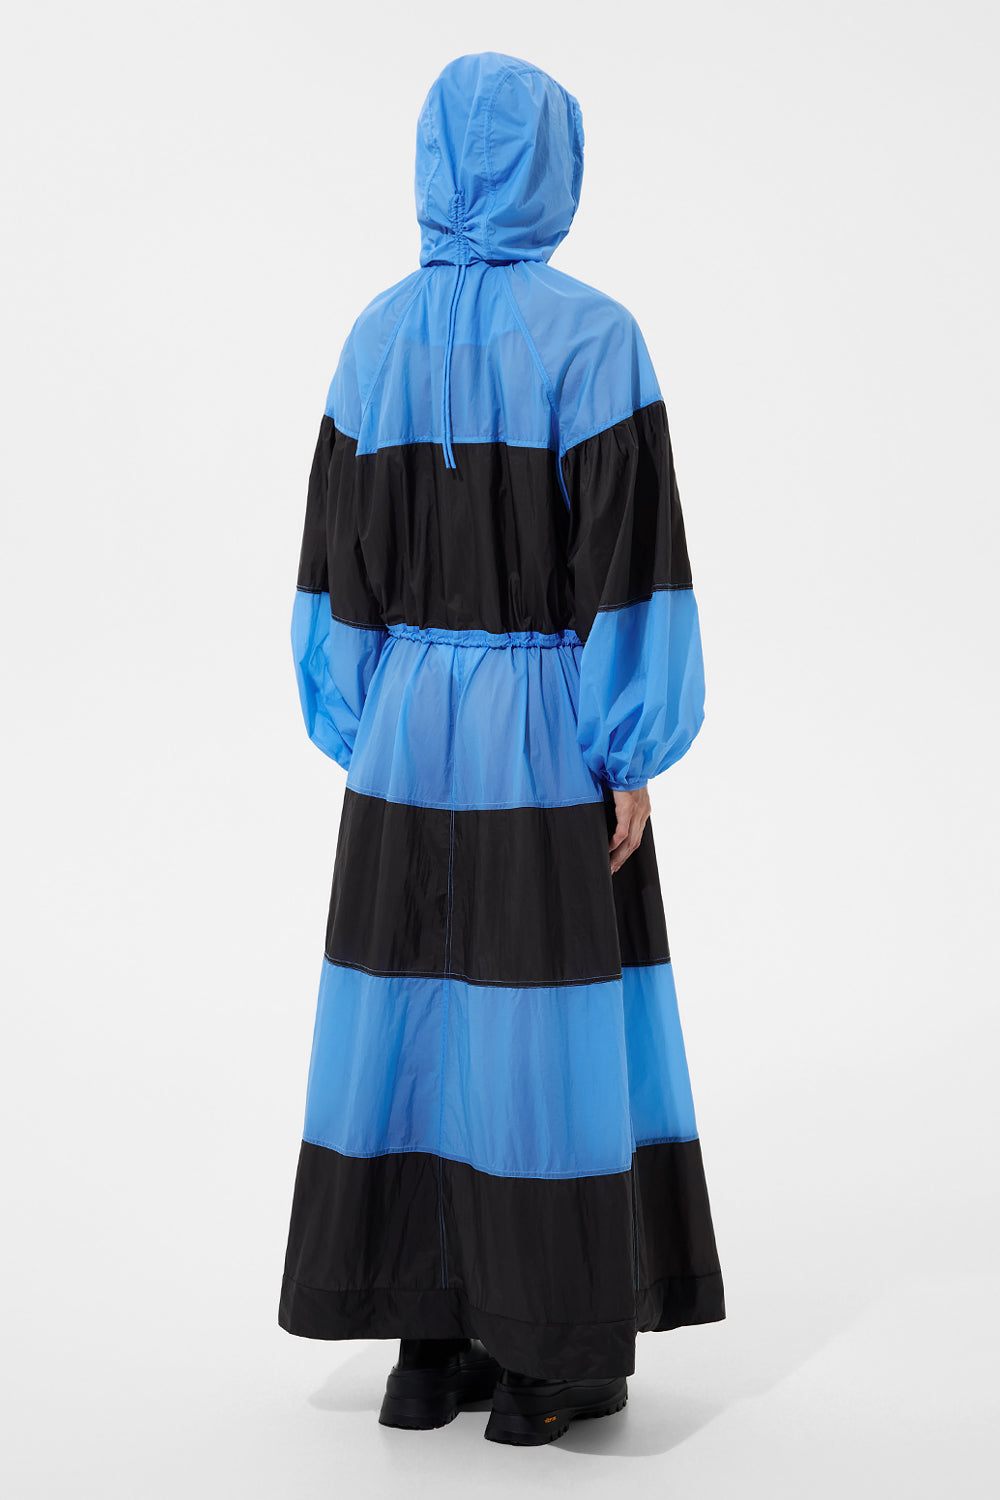 Stripe Dress Micro Bright Blue + Micro Black